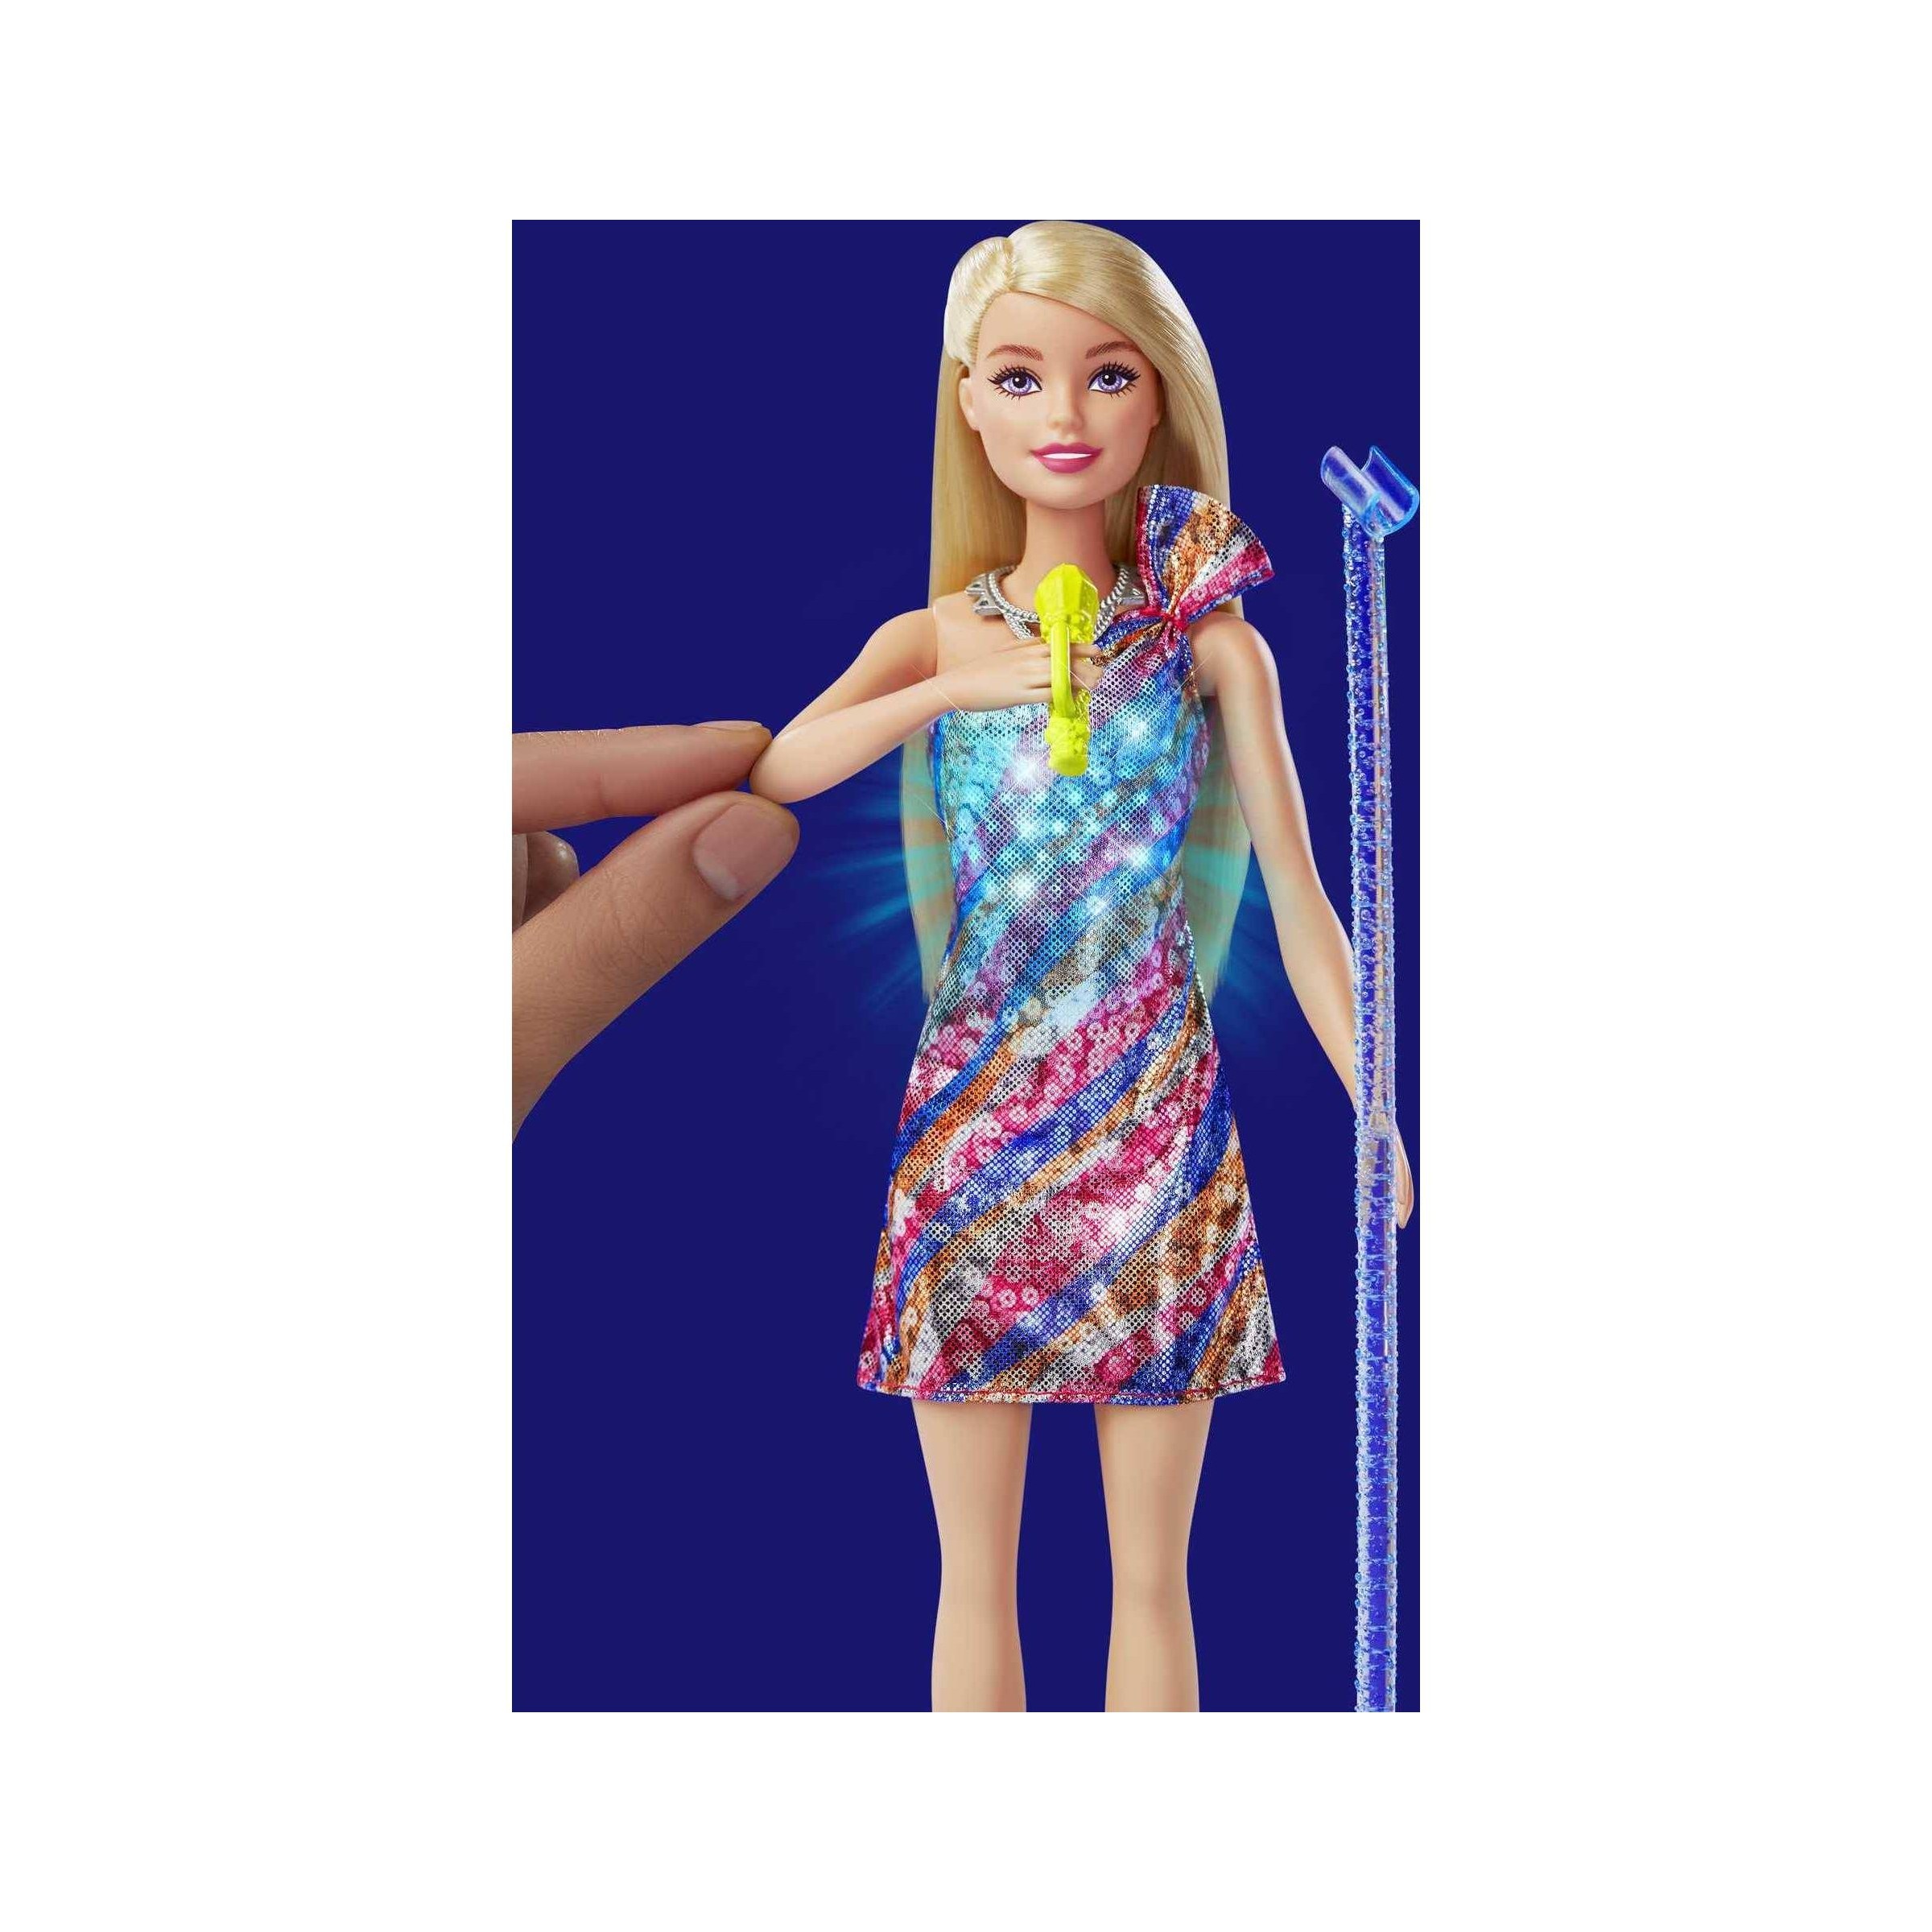 MATTEL Barbie 芭比Big City Big Dreams™音樂會套裝連娃娃 (MBB97282)